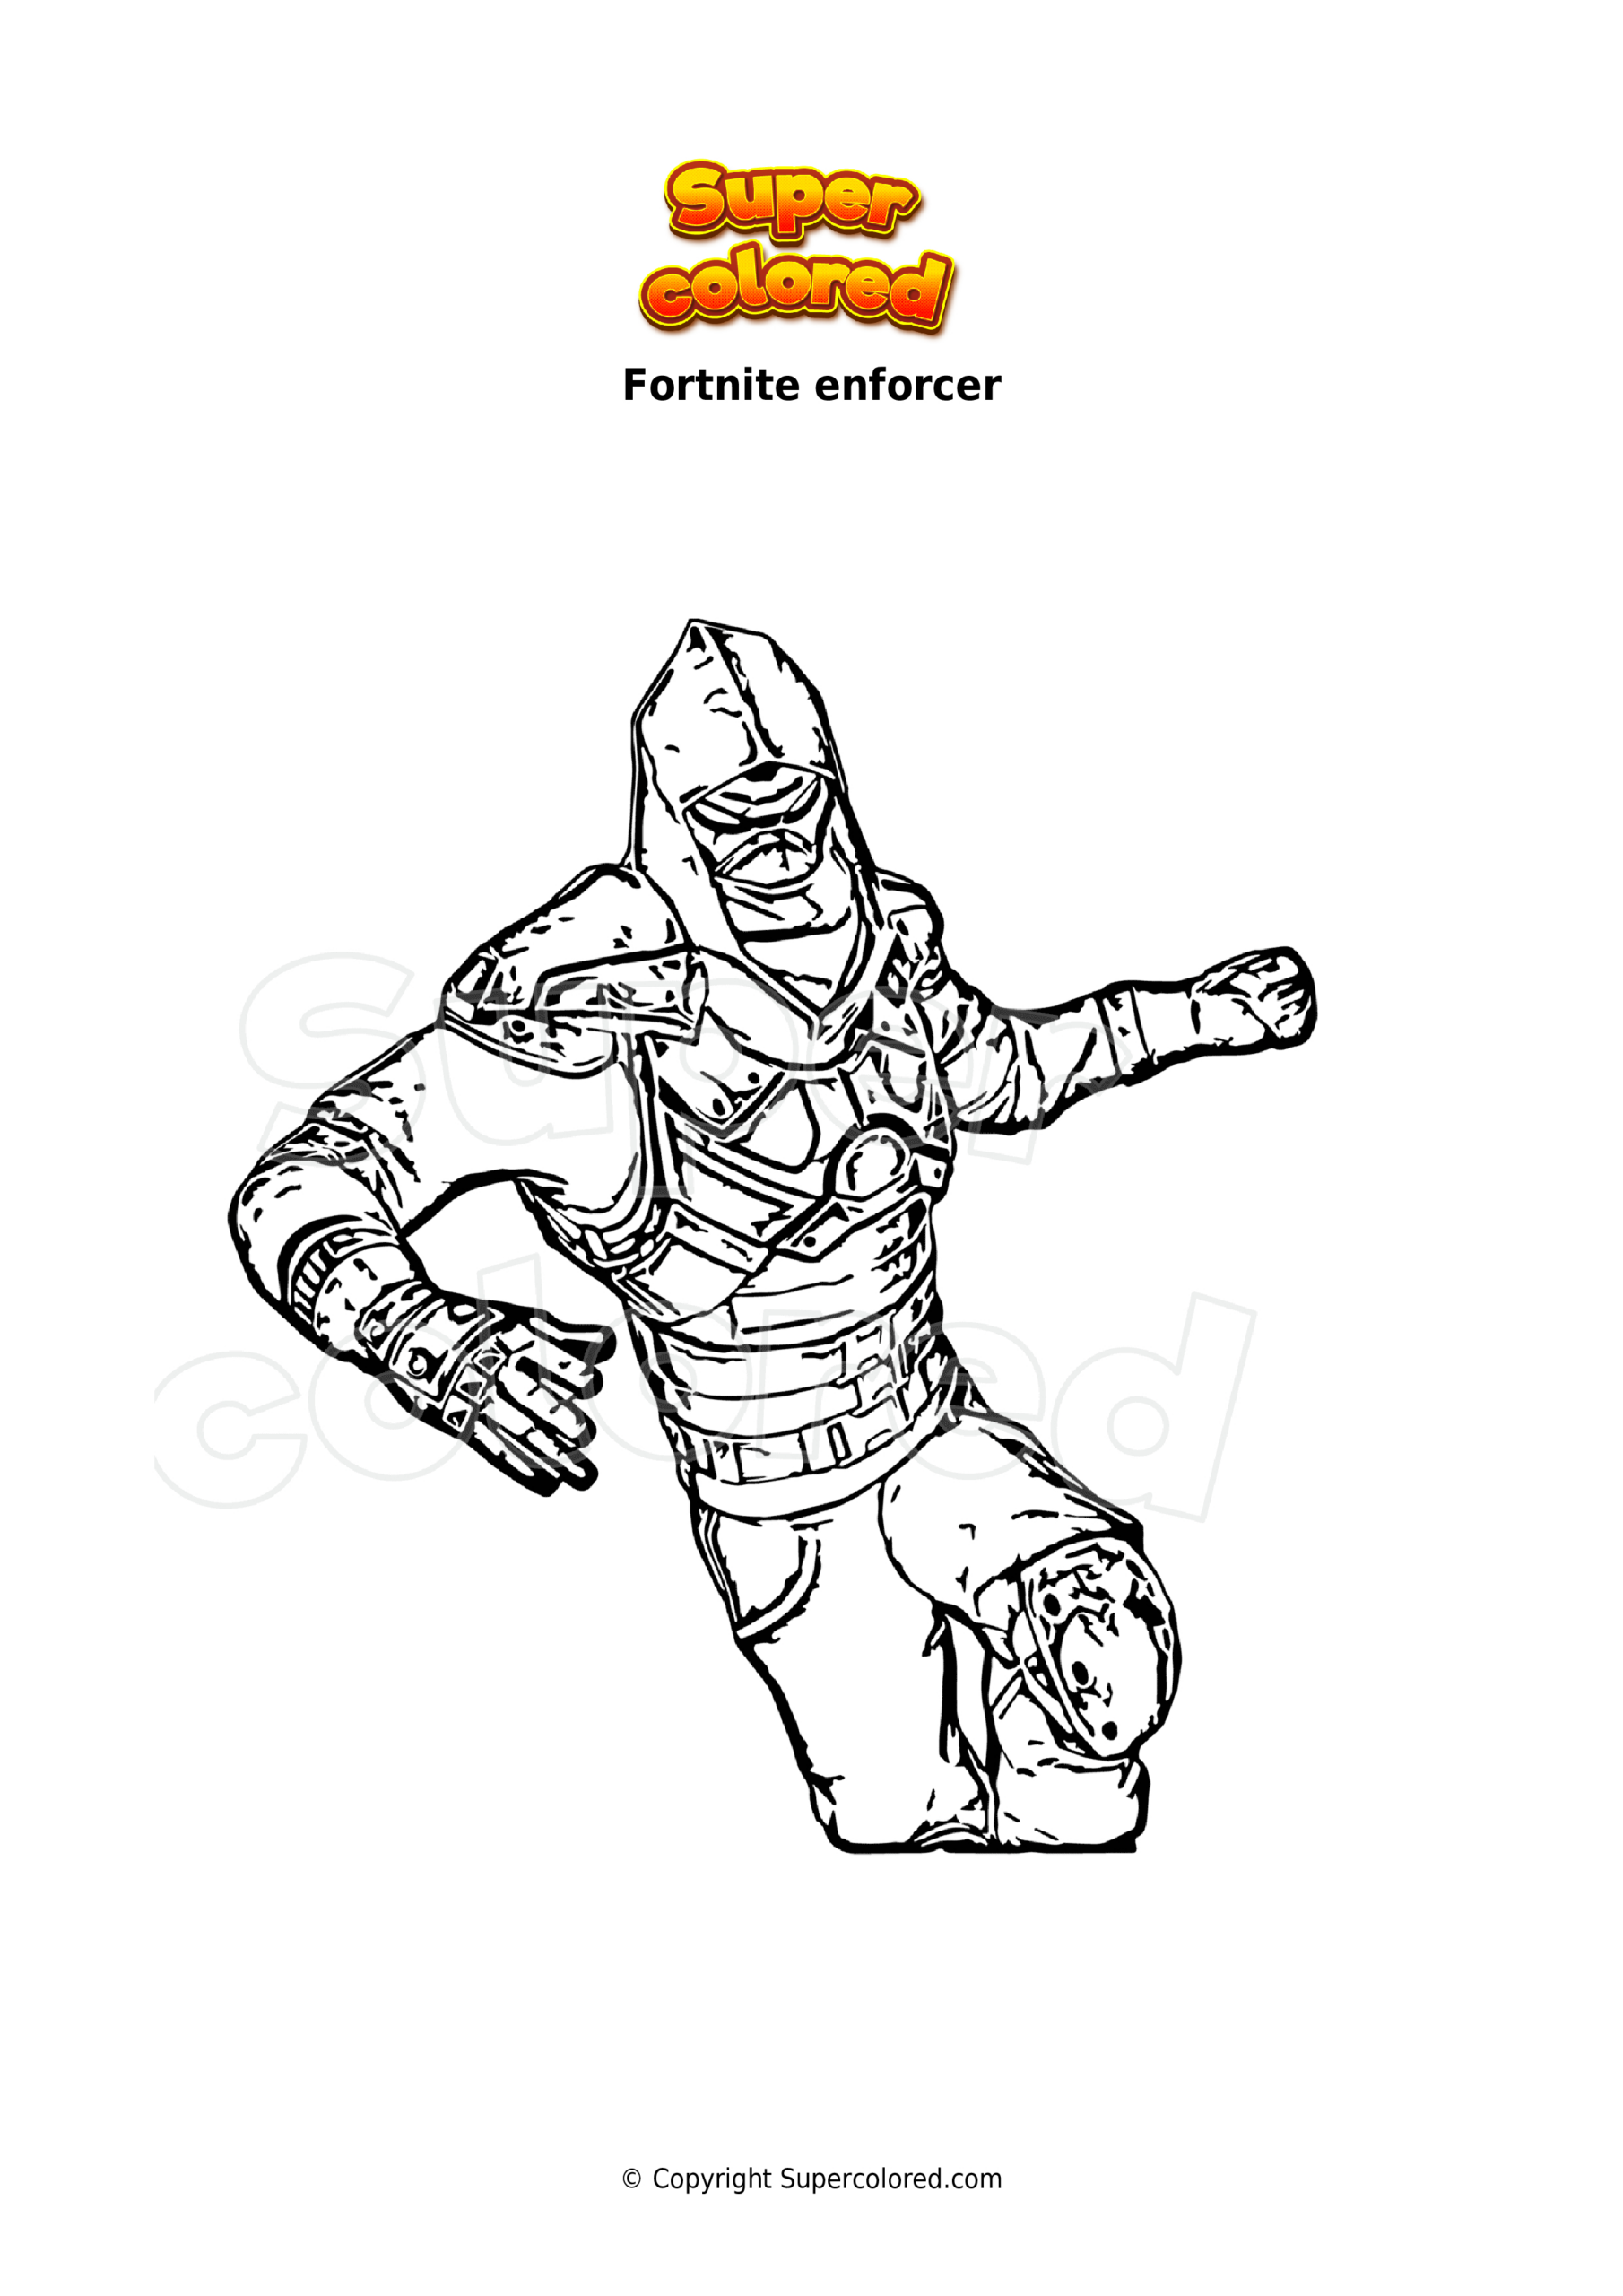 Coloriage Fortnite Enforcer - Supercolored à Coloriage Fortenite